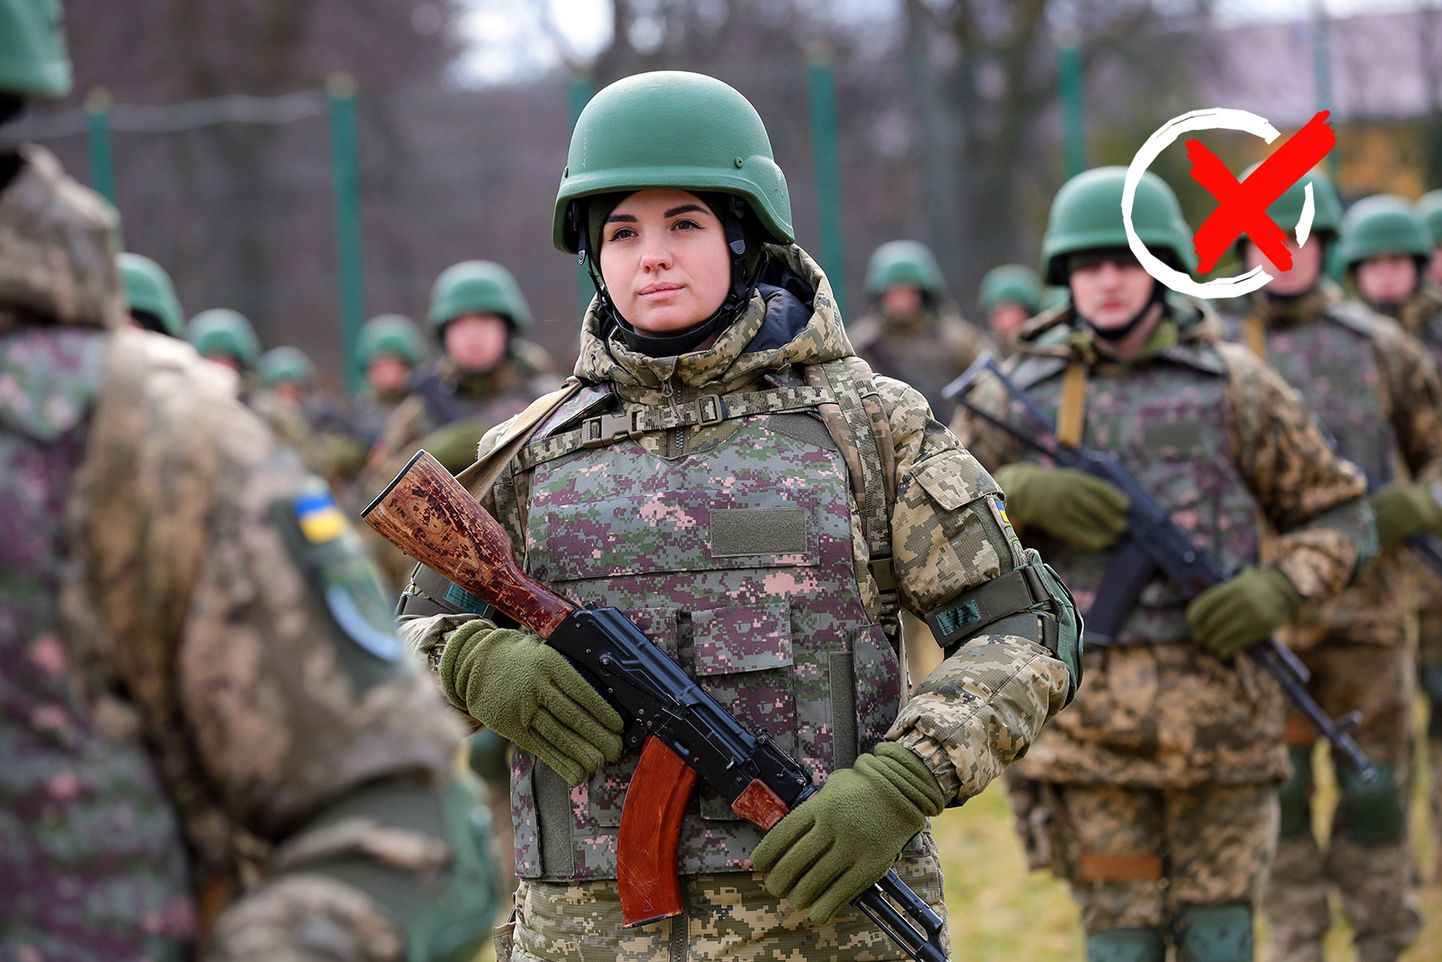 Vai karavīru trūkuma dēļ Ukraina sākusi iesaukt dienestā visas 18 - 60 gadus vecas sievietes?